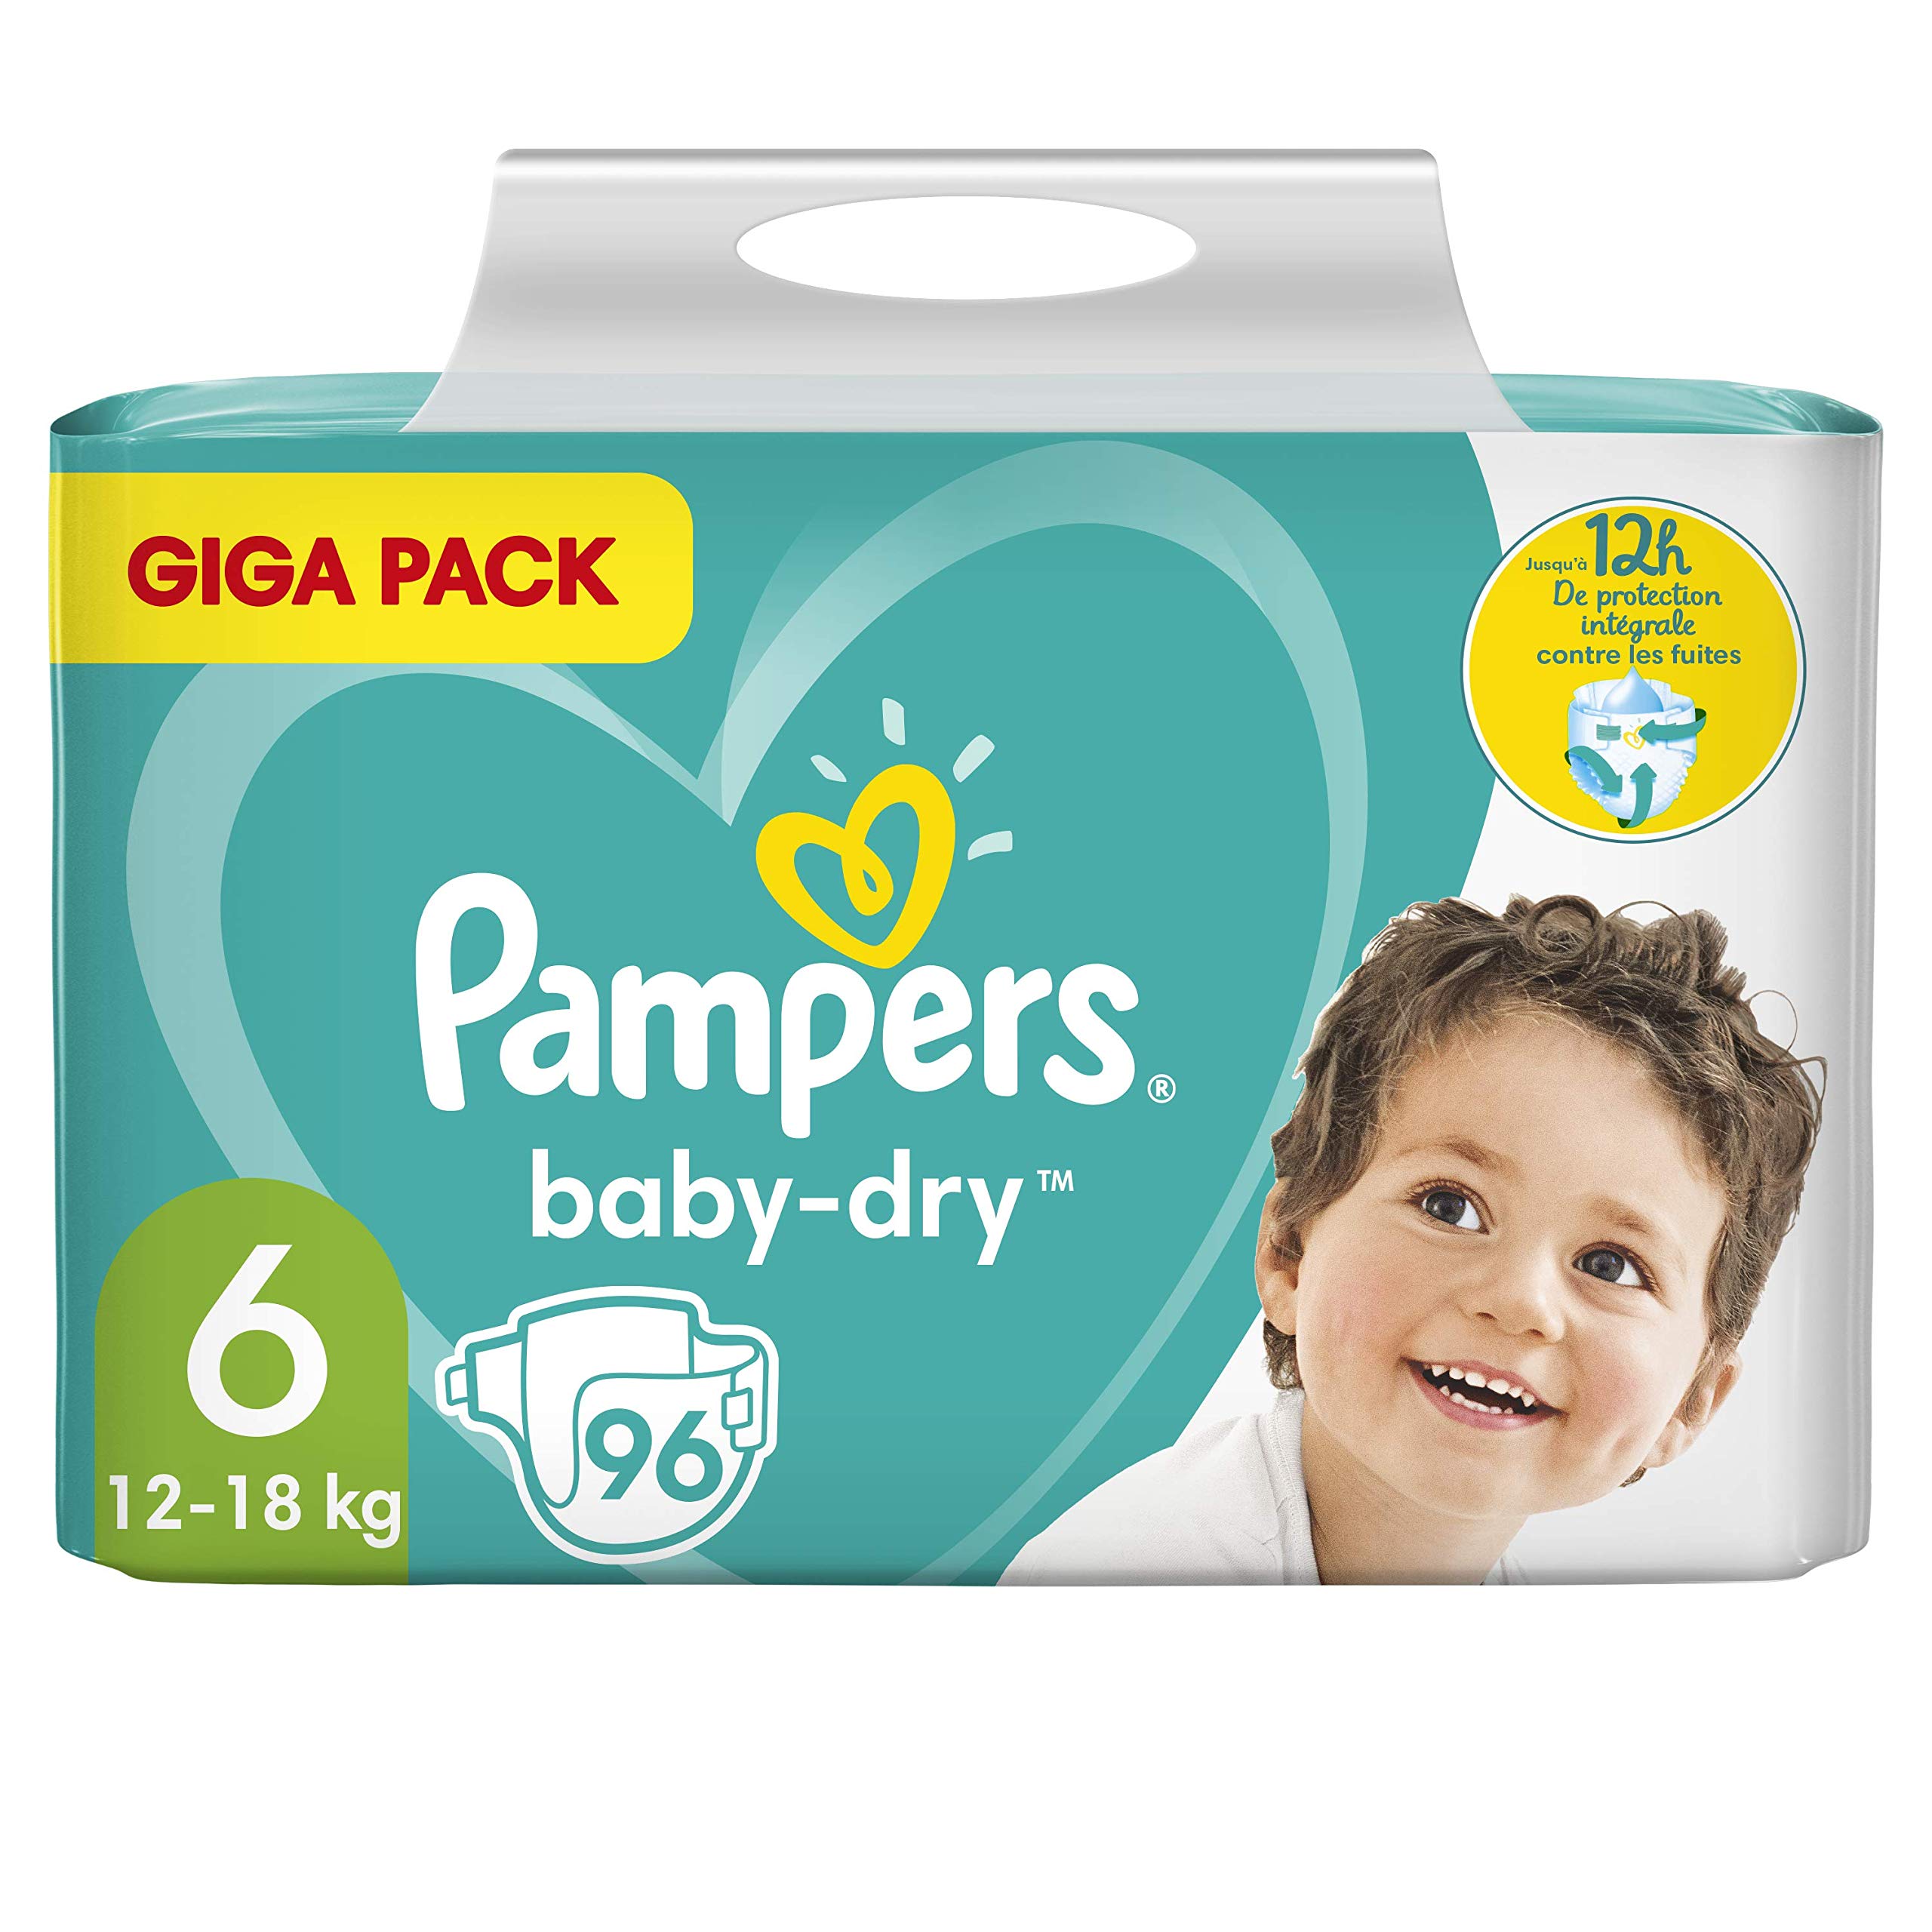 Pampers (Alte Version) Baby Windeln Größe 6 (12-18kg), 96 Stück, Extra Large, GIGA PACK